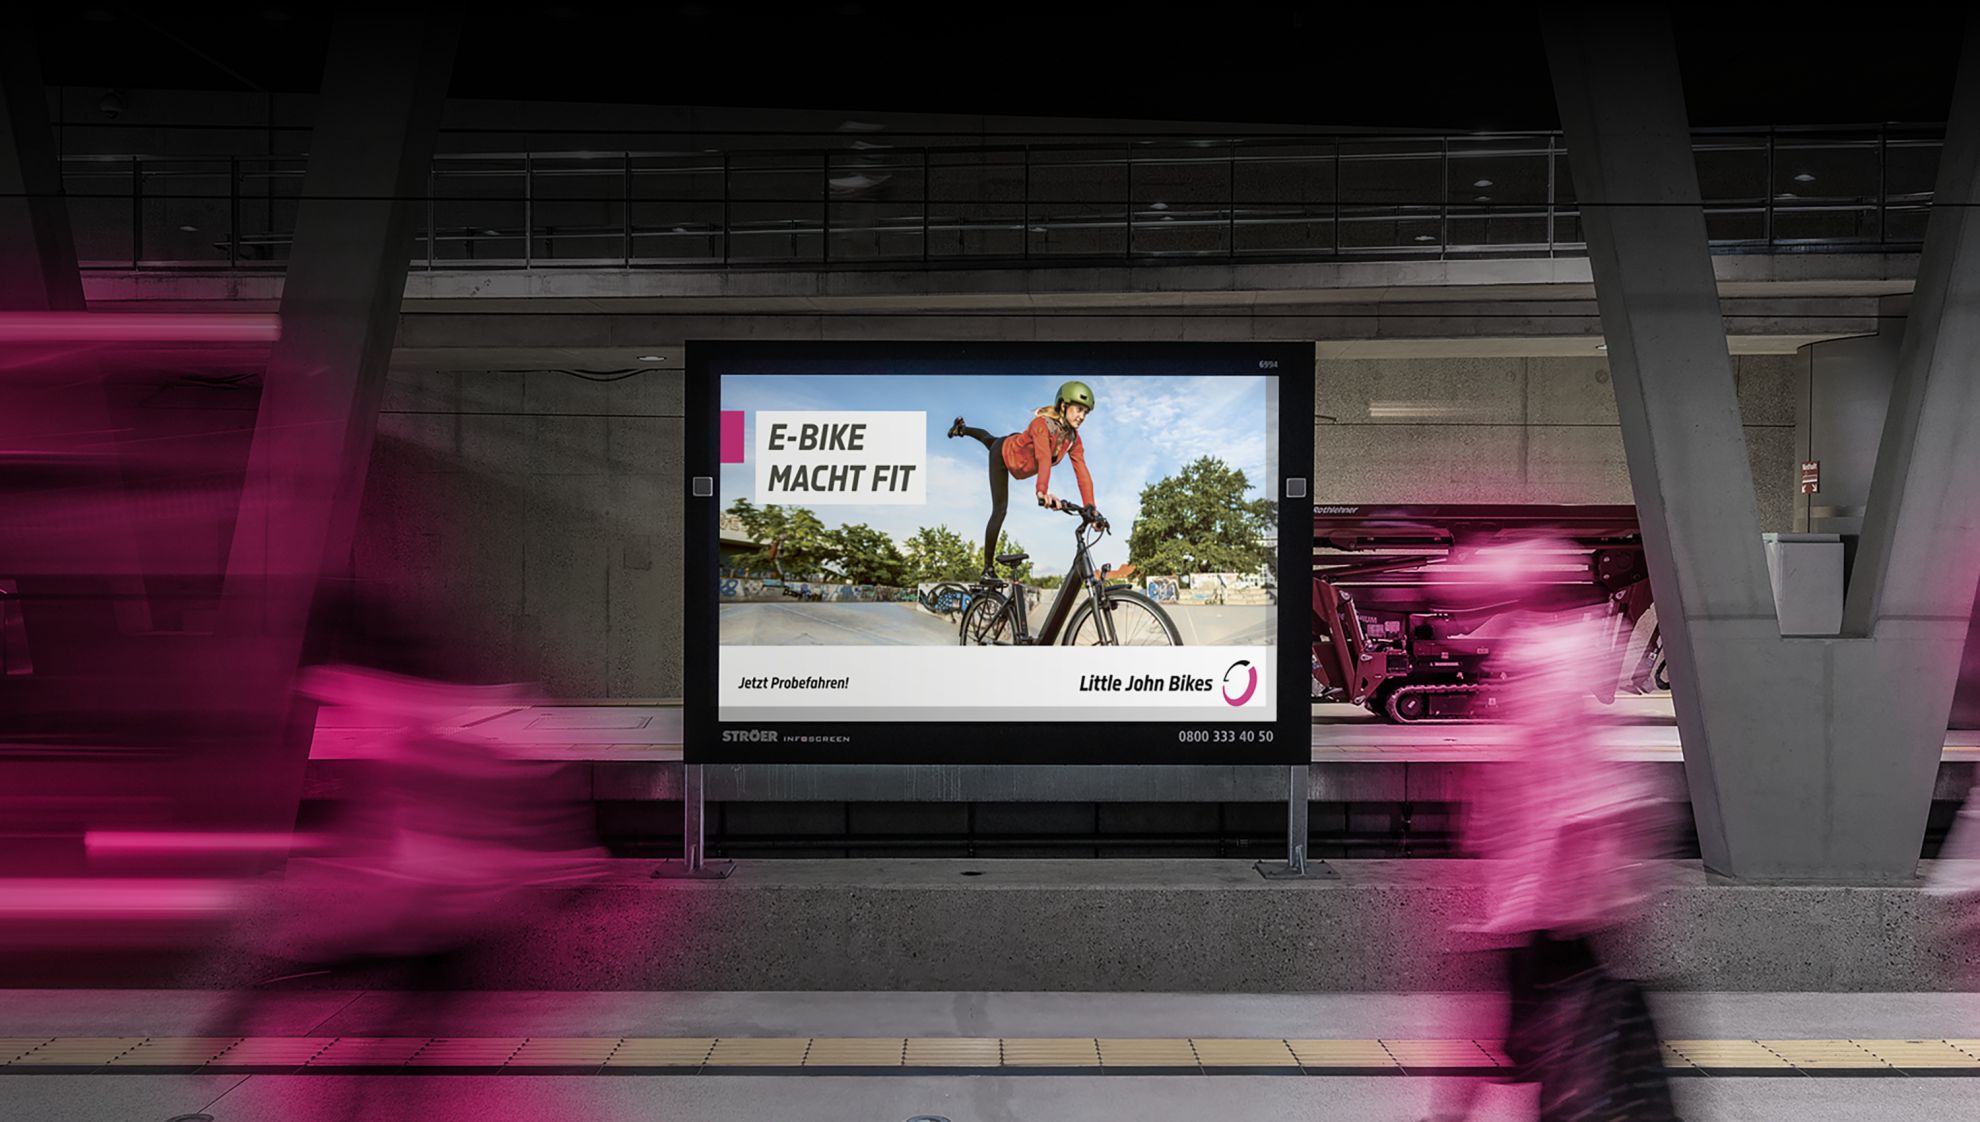 Werbeplakat von Little John Bikes in Großstadt an einem Bahnhof, dynamische Schrift, im Vordergrund verwischte Lichter von einem abfahrenden Zug